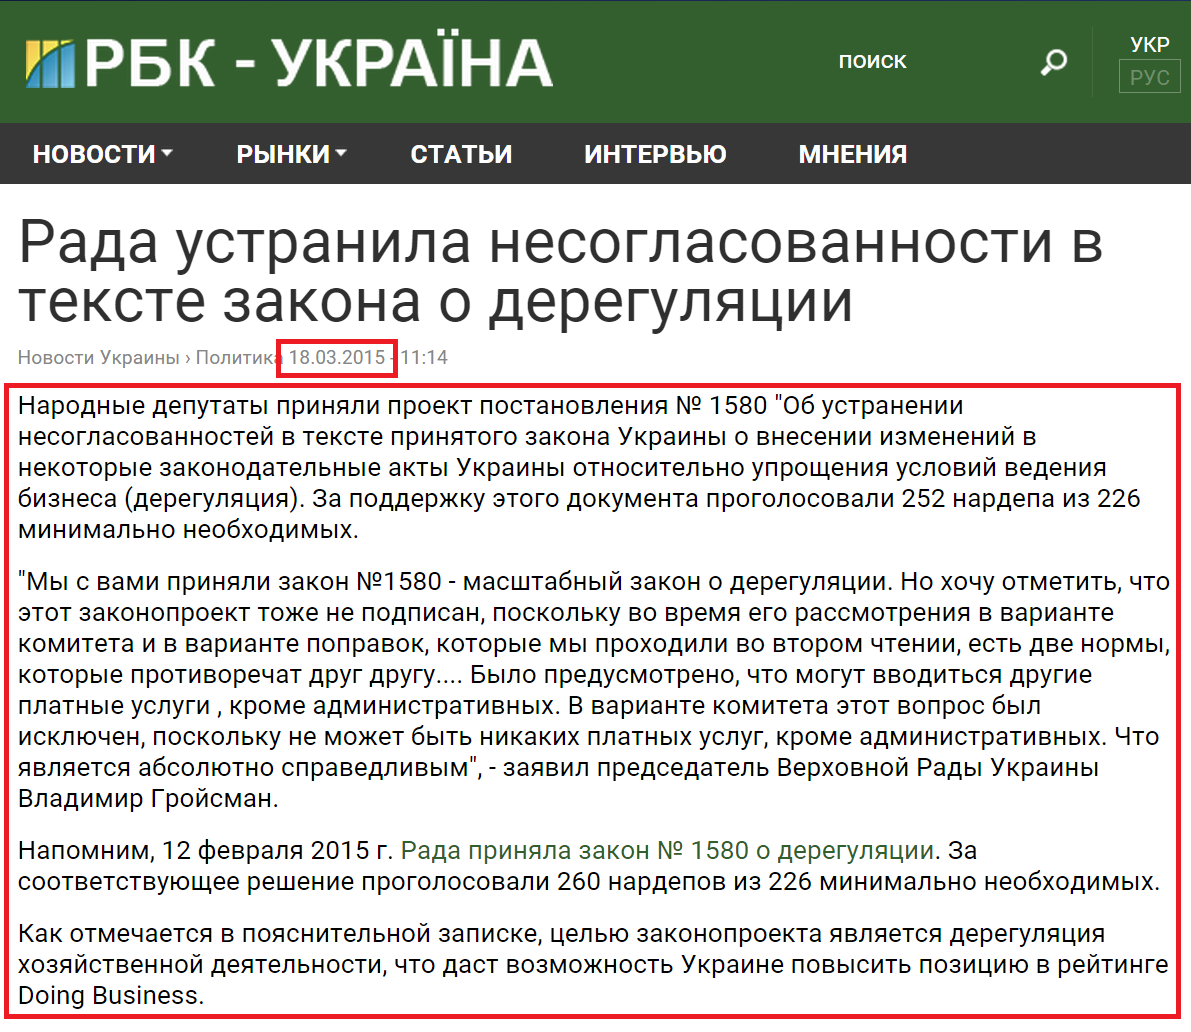 http://www.rbc.ua/rus/news/rada-ustranila-nesoglasovannosti-tekste-zakona-1426670046.html